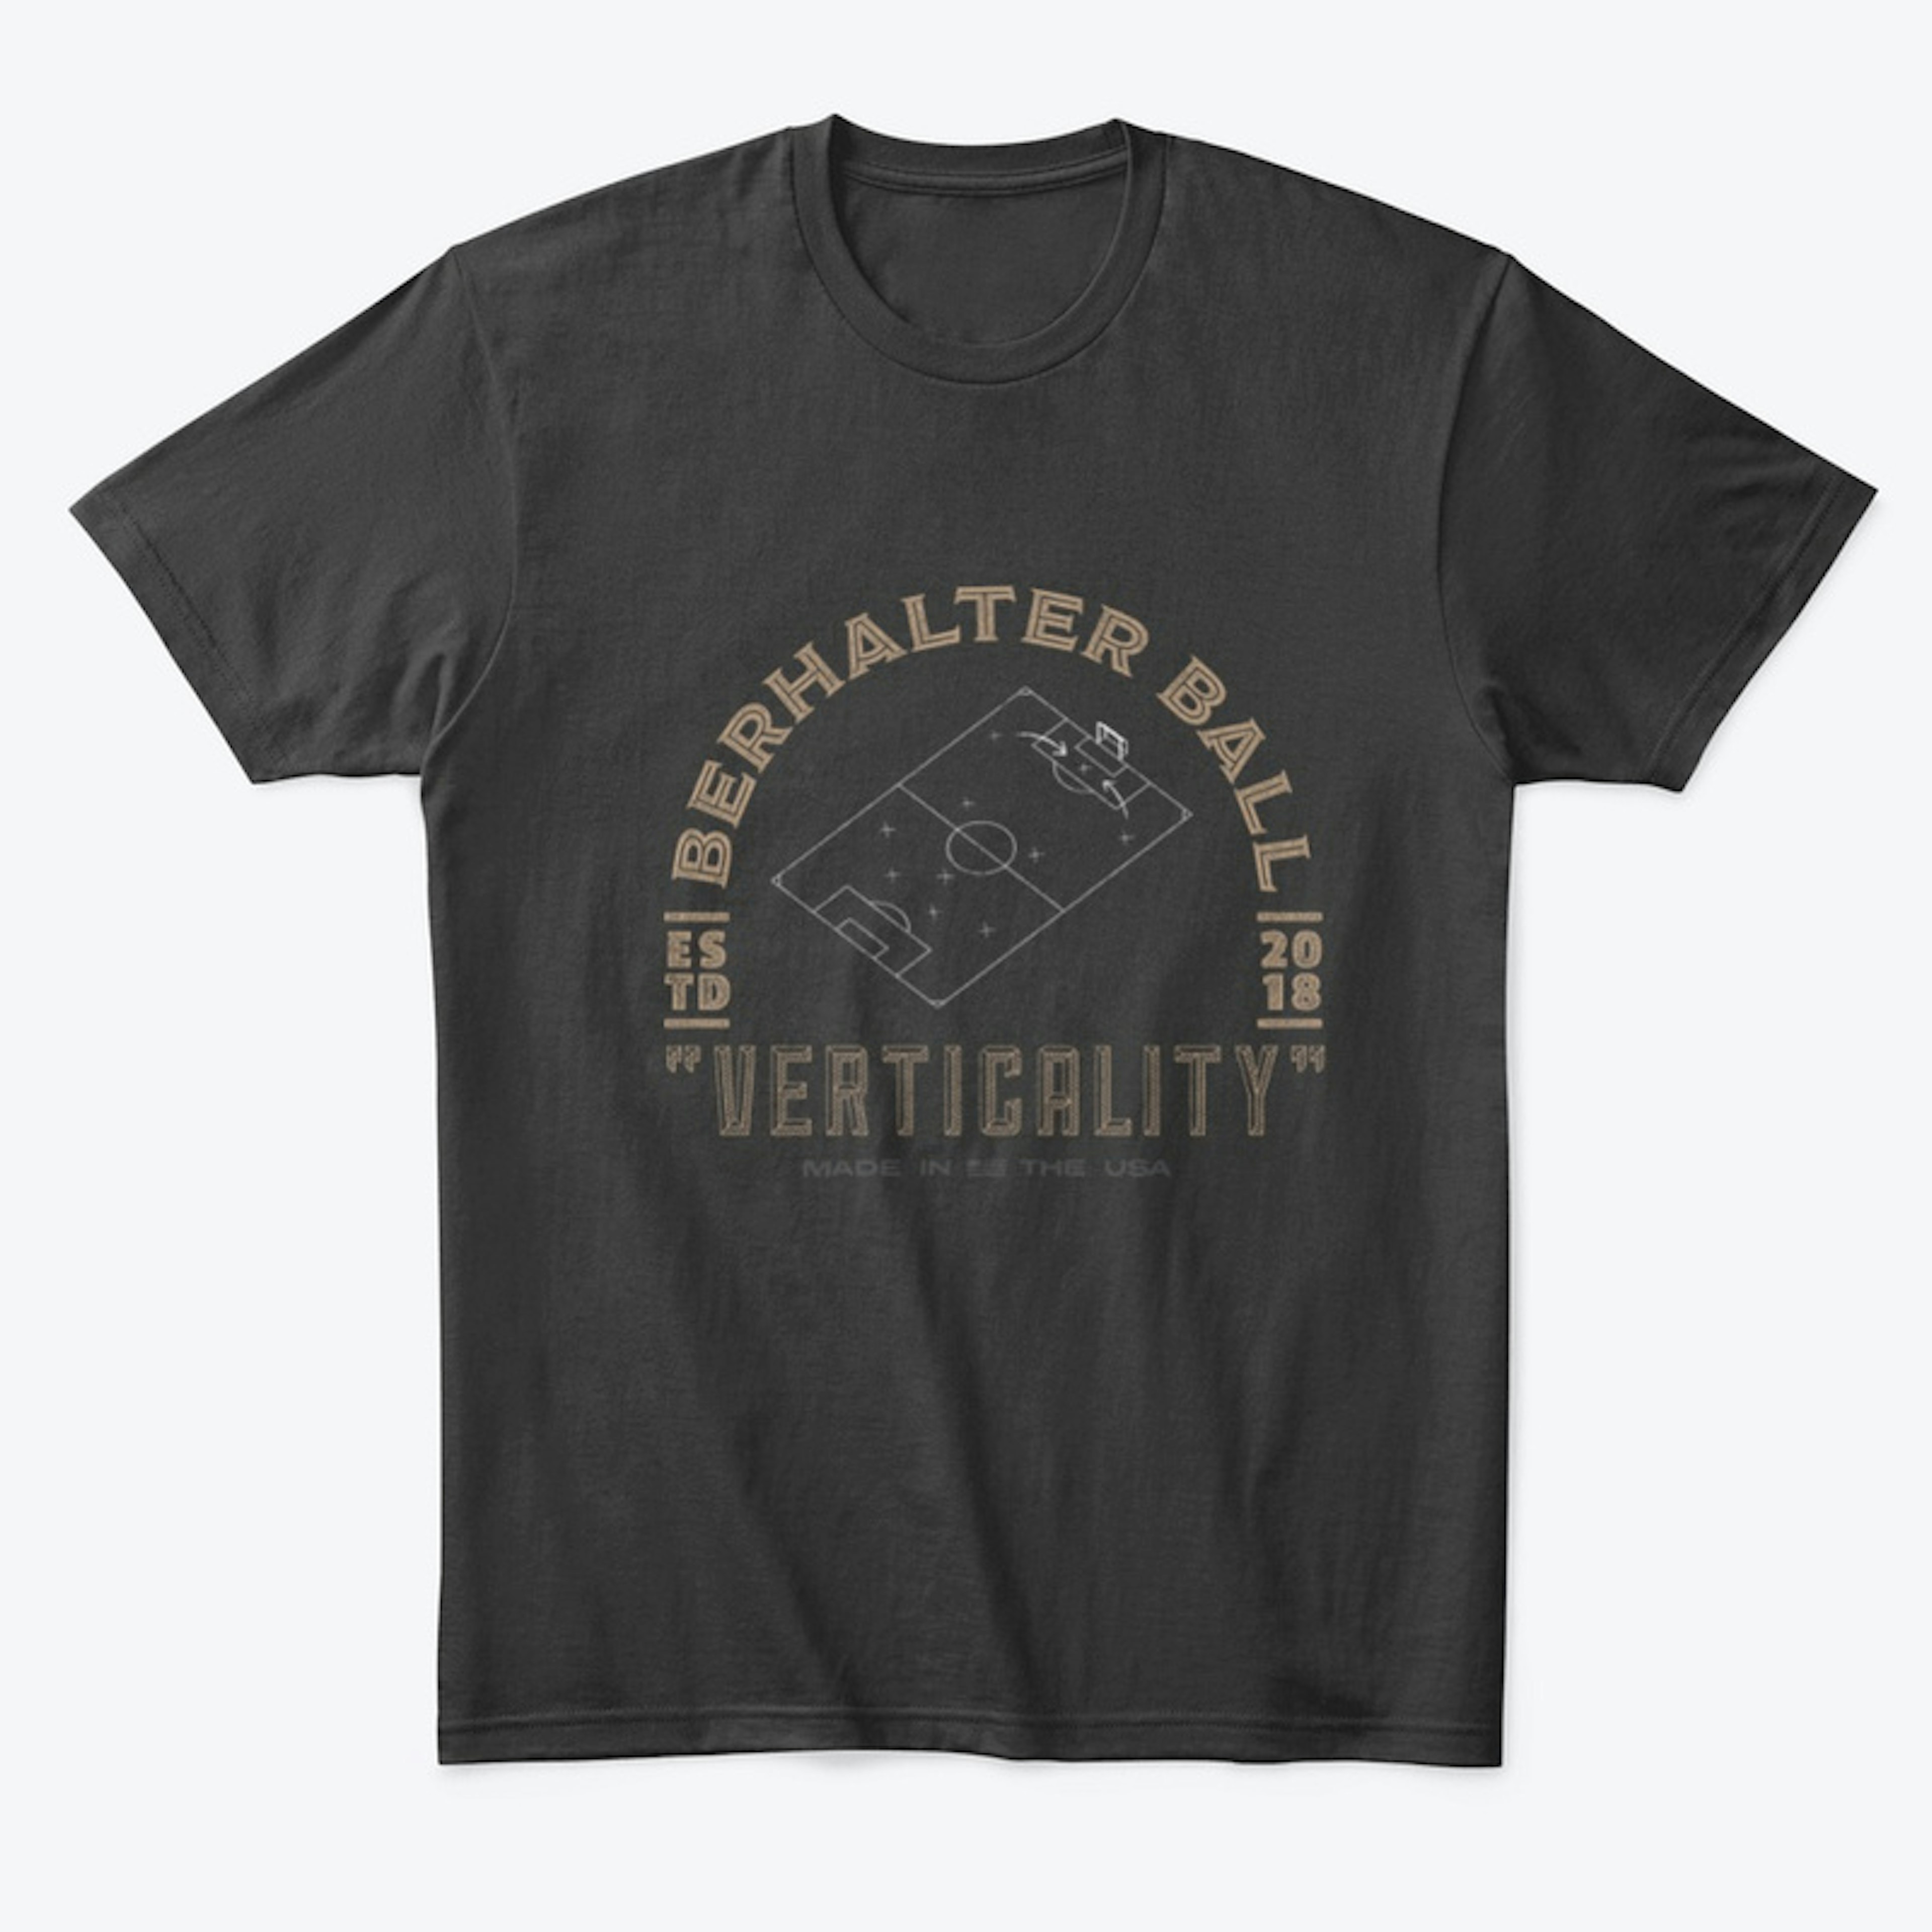 Berhater Ball T-Shirt